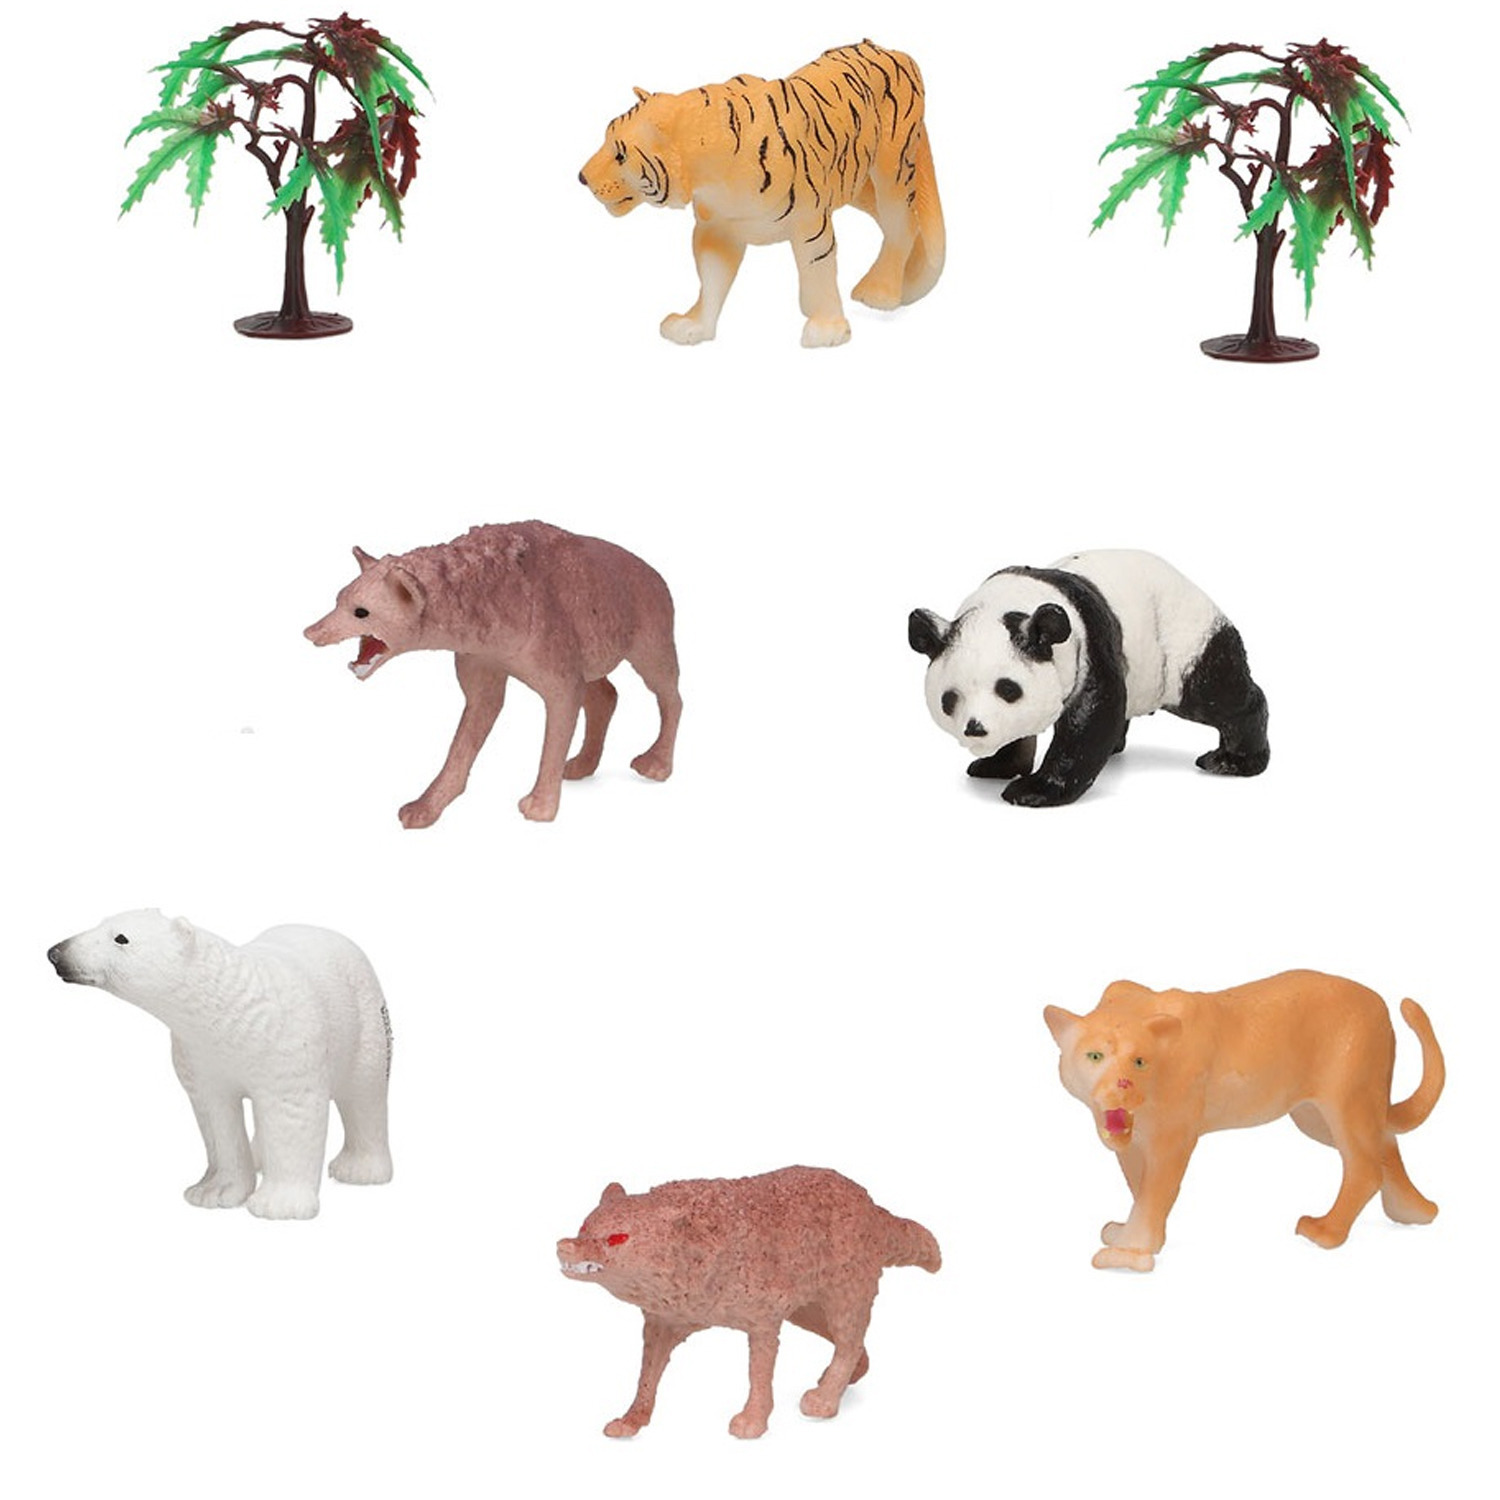 Afbeelding 6x Plastic safaridieren speelgoed figuren voor kinderen door Animals Giftshop